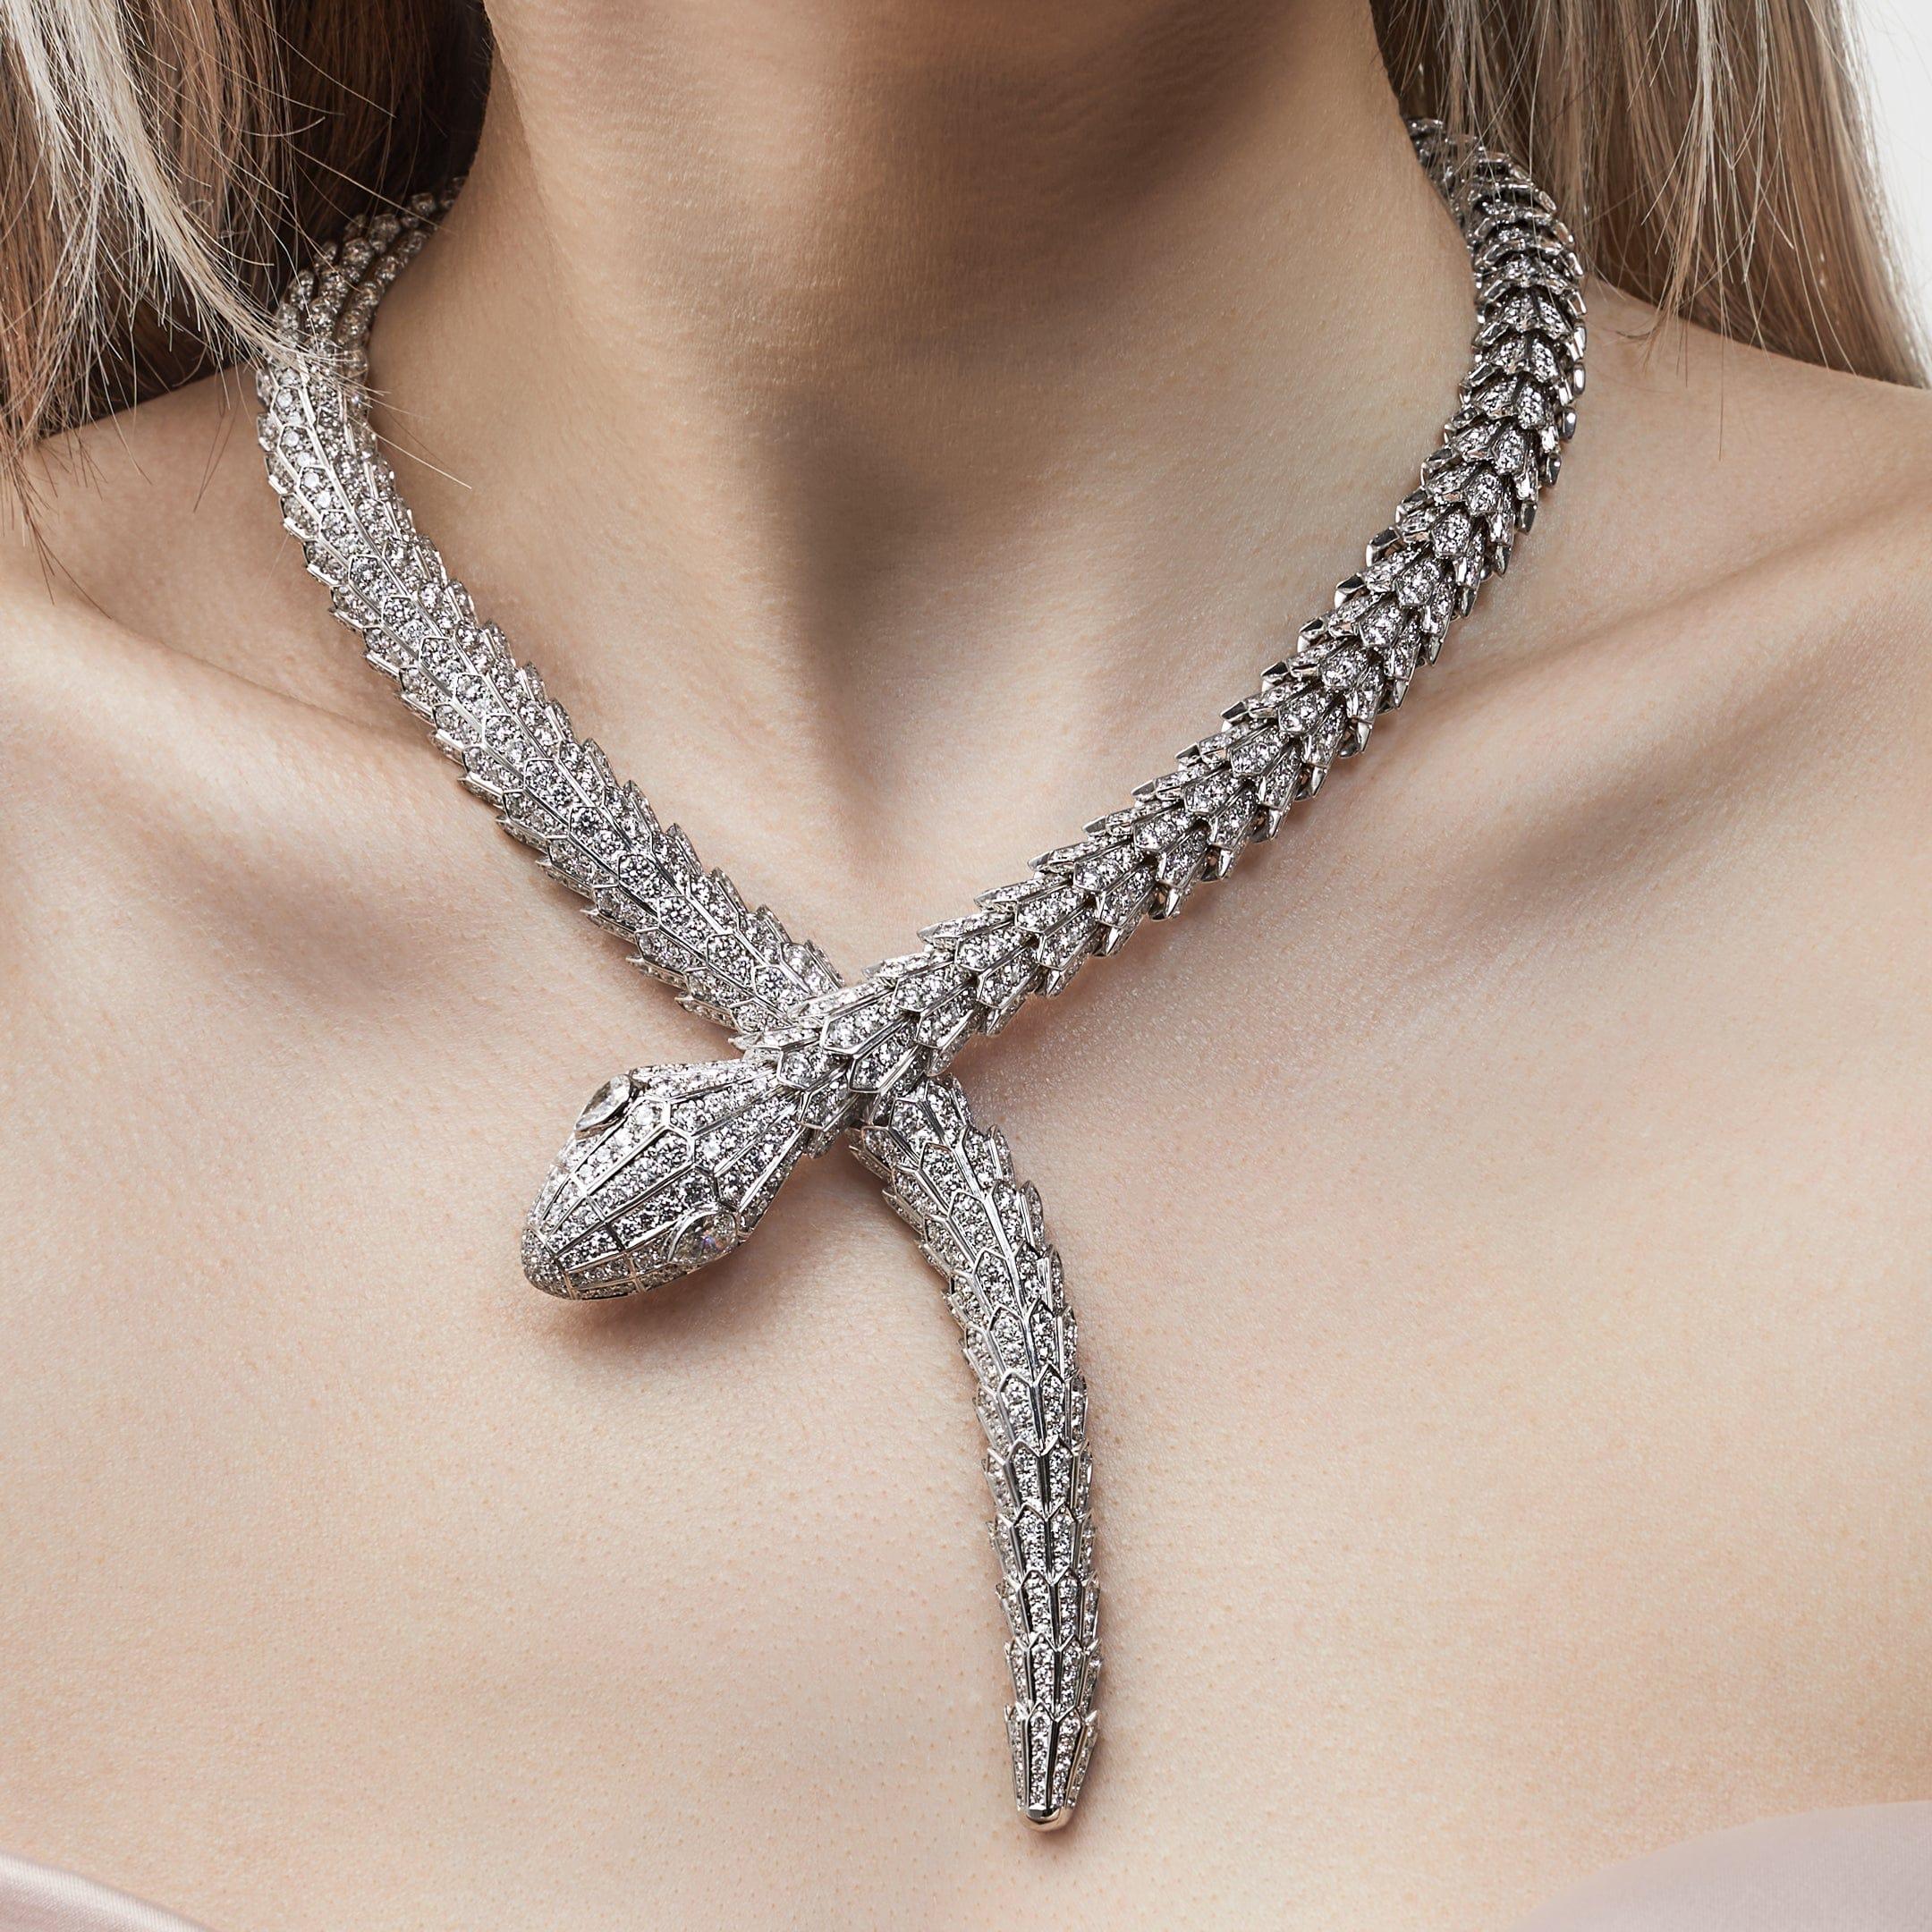 Diese Serpenti-Halskette von Bvlgari aus 18 Karat Weißgold ist ein Symbol für die Kunstfertigkeit und Innovation von Bvlgari.  Der Kopf und der Schwanz der Schlange sind mit Diamanten in Pavé-Fassung besetzt, die die Schuppen der Schlange nachahmen